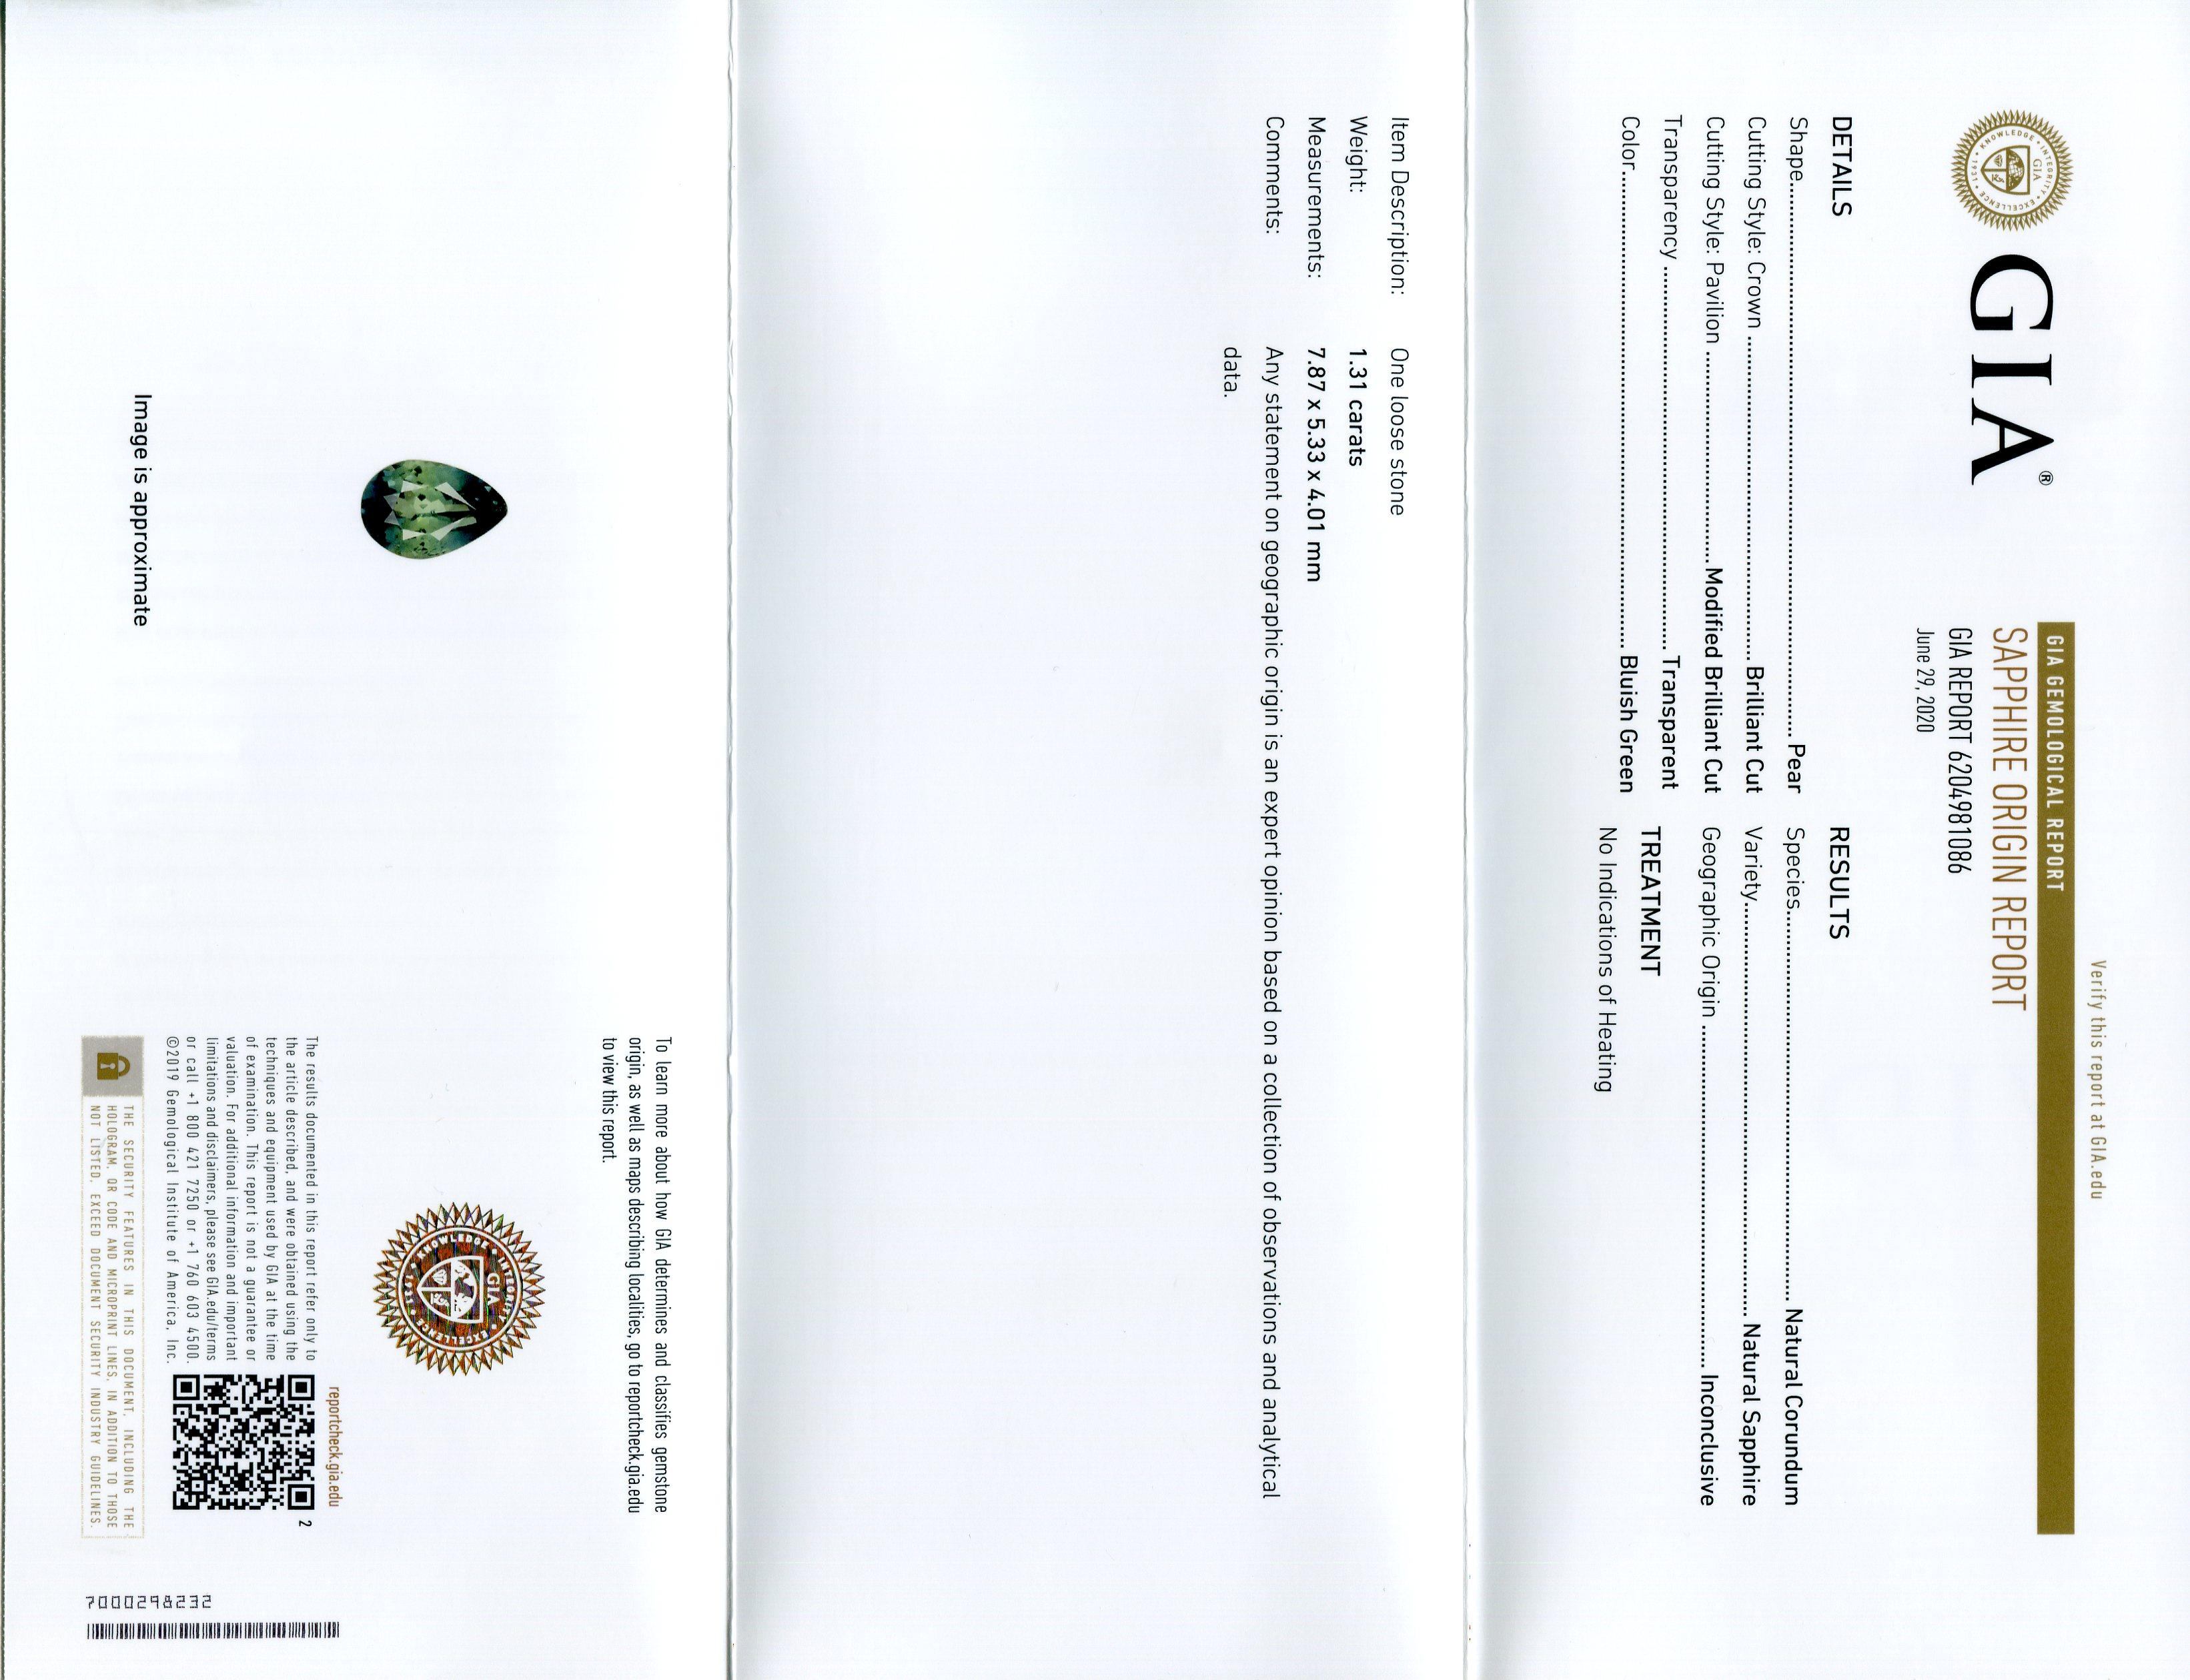 Taille brillant 1.31ct poire saphir vert sarcelle certifié GIA non chauffé en vente